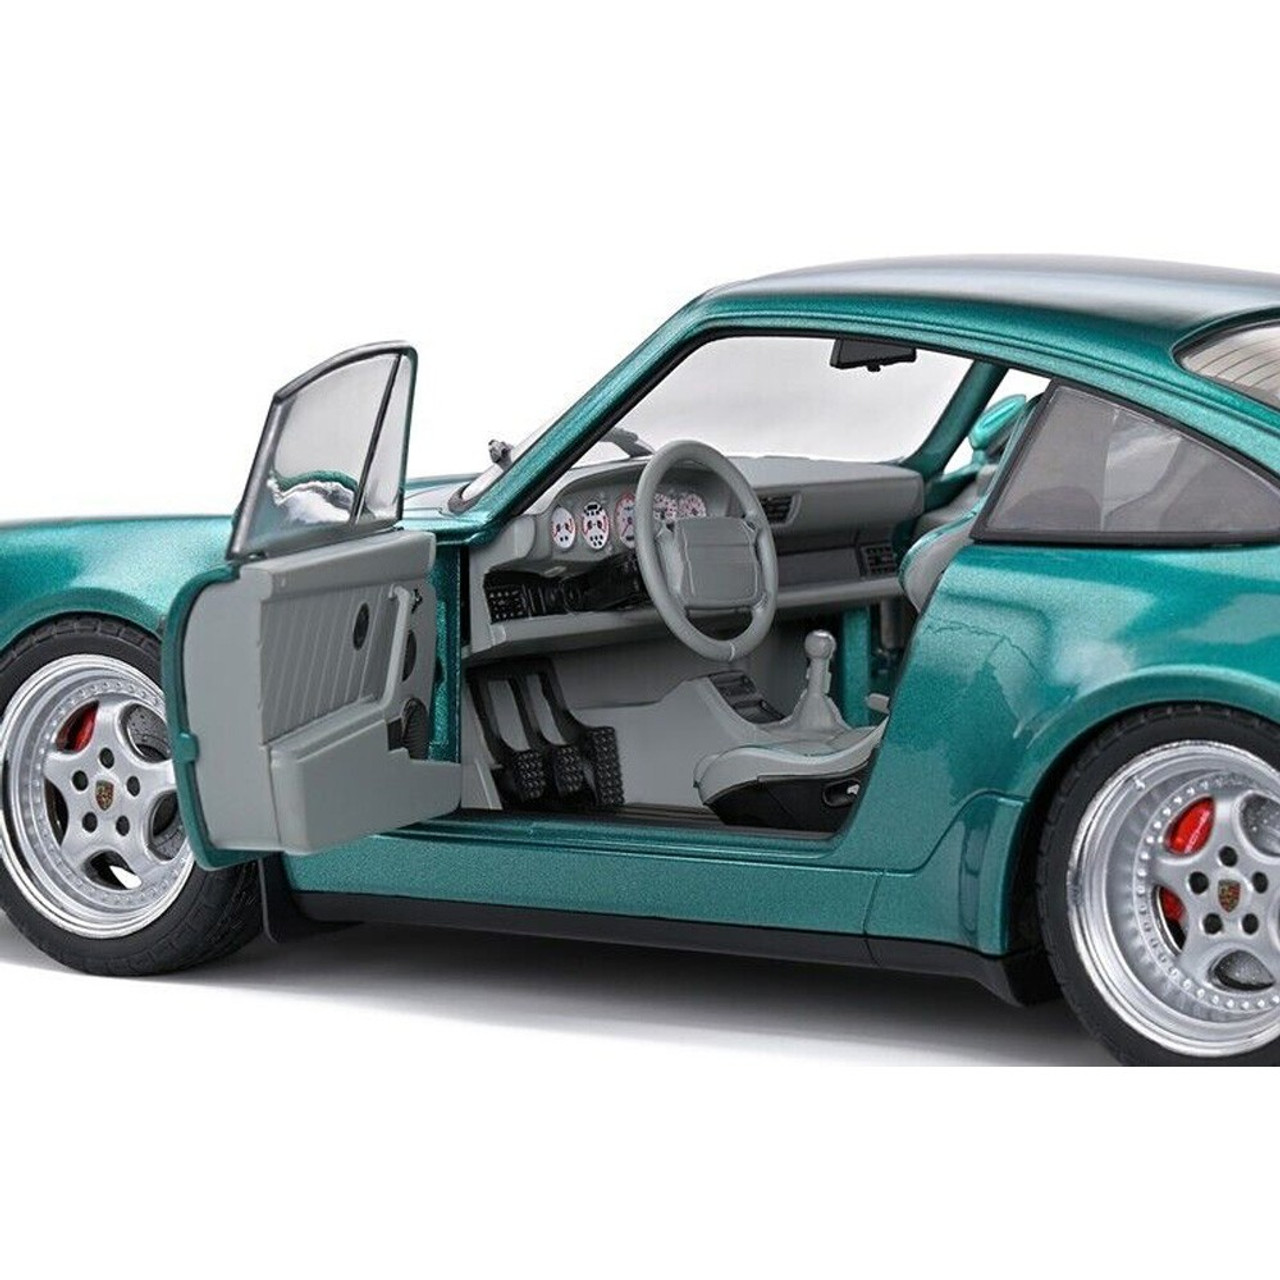 1991 Porsche 911 Turbo - Wimbledon Green Metallic - 1:18 Diecast Model Car by Solido